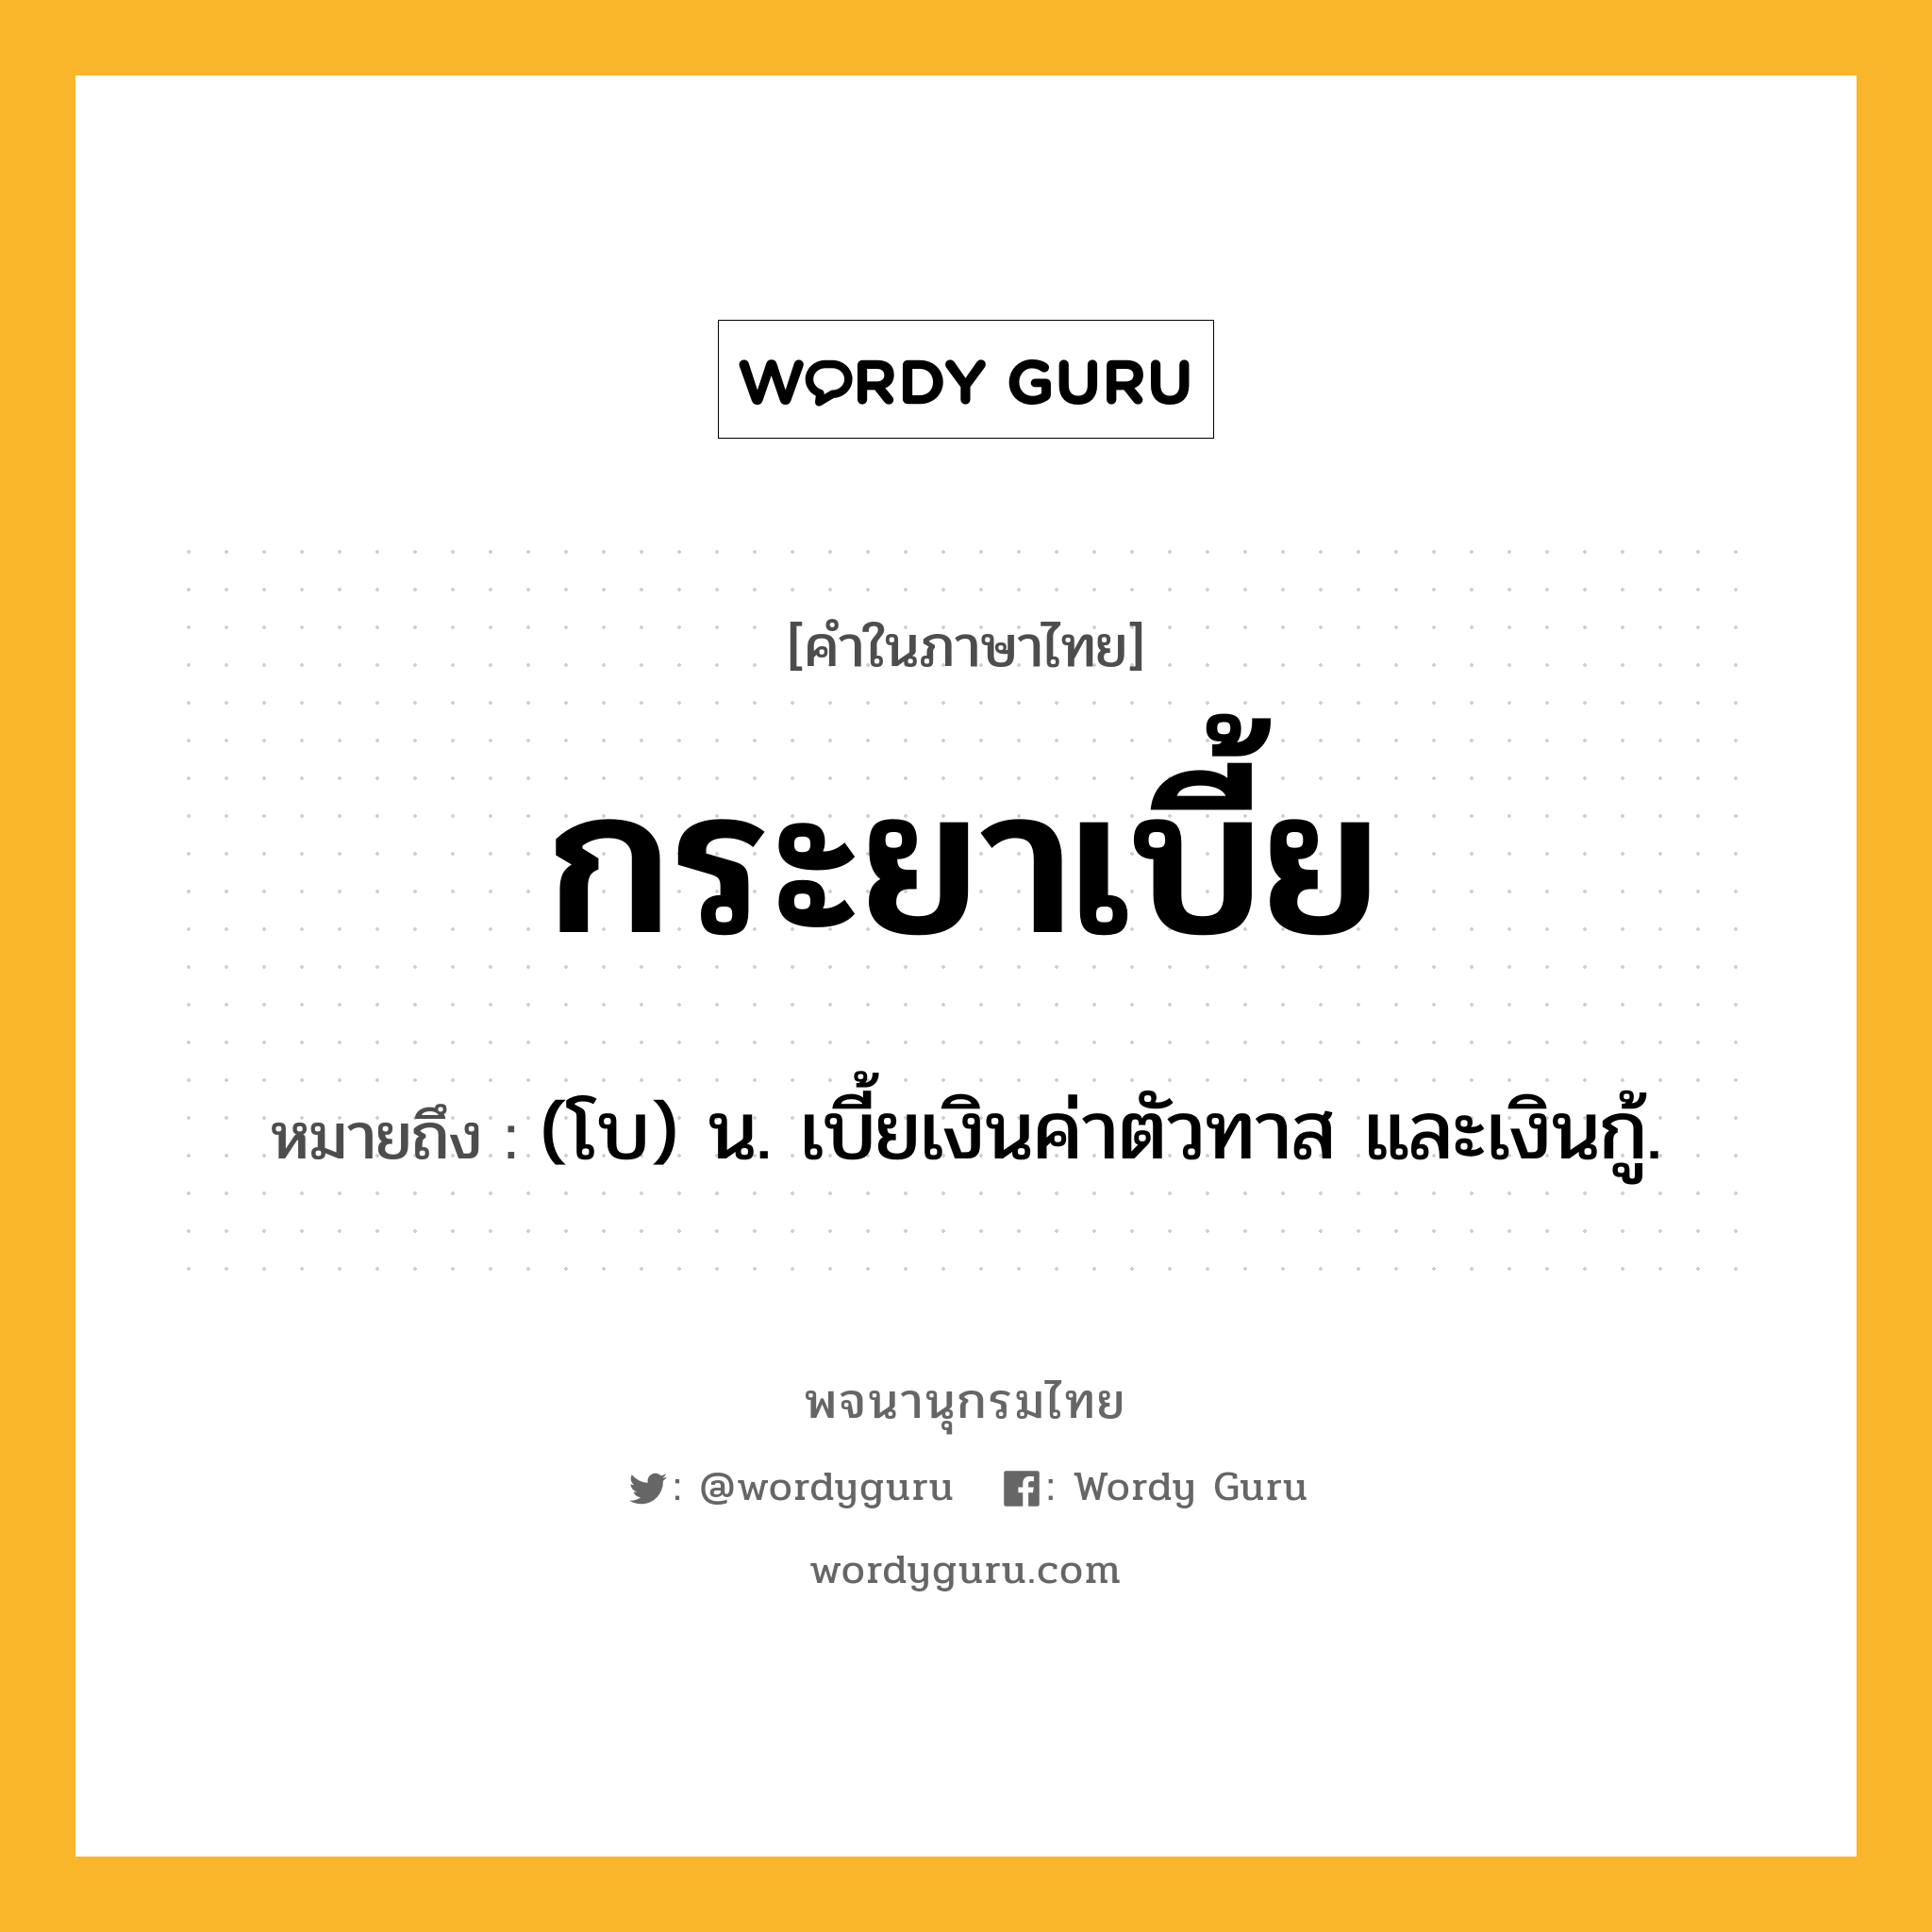 กระยาเบี้ย ความหมาย หมายถึงอะไร?, คำในภาษาไทย กระยาเบี้ย หมายถึง (โบ) น. เบี้ยเงินค่าตัวทาส และเงินกู้.